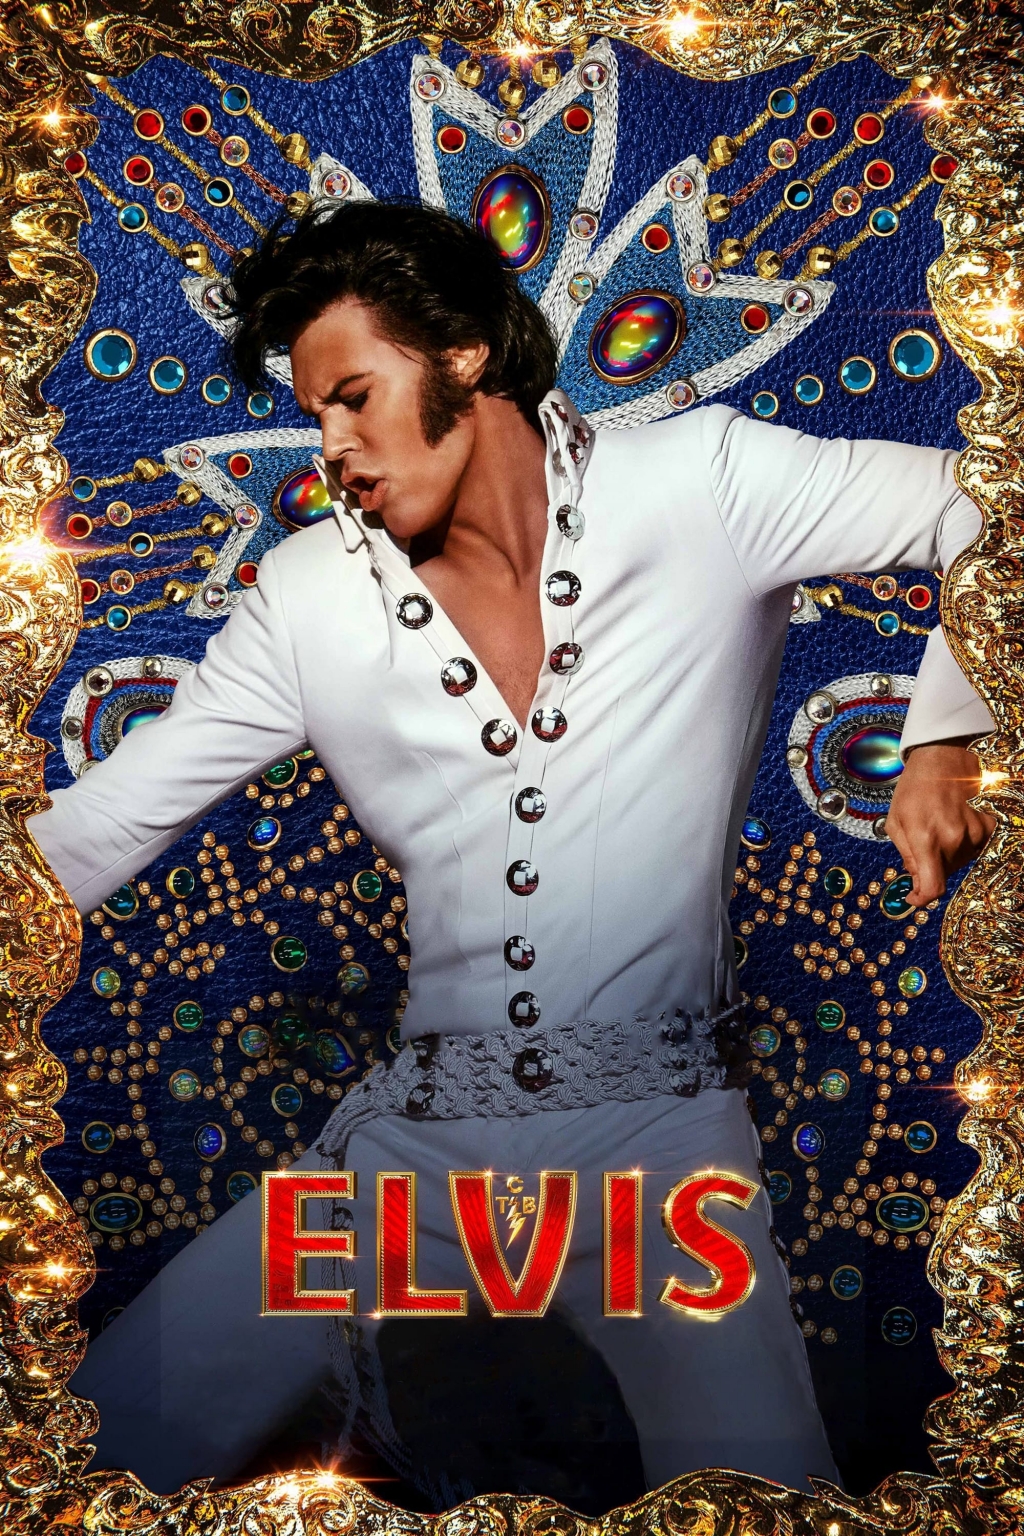 Phim tiểu sử về huyền thoại Elvis Presley nhắm đến màn ra mắt 30 triệu USD